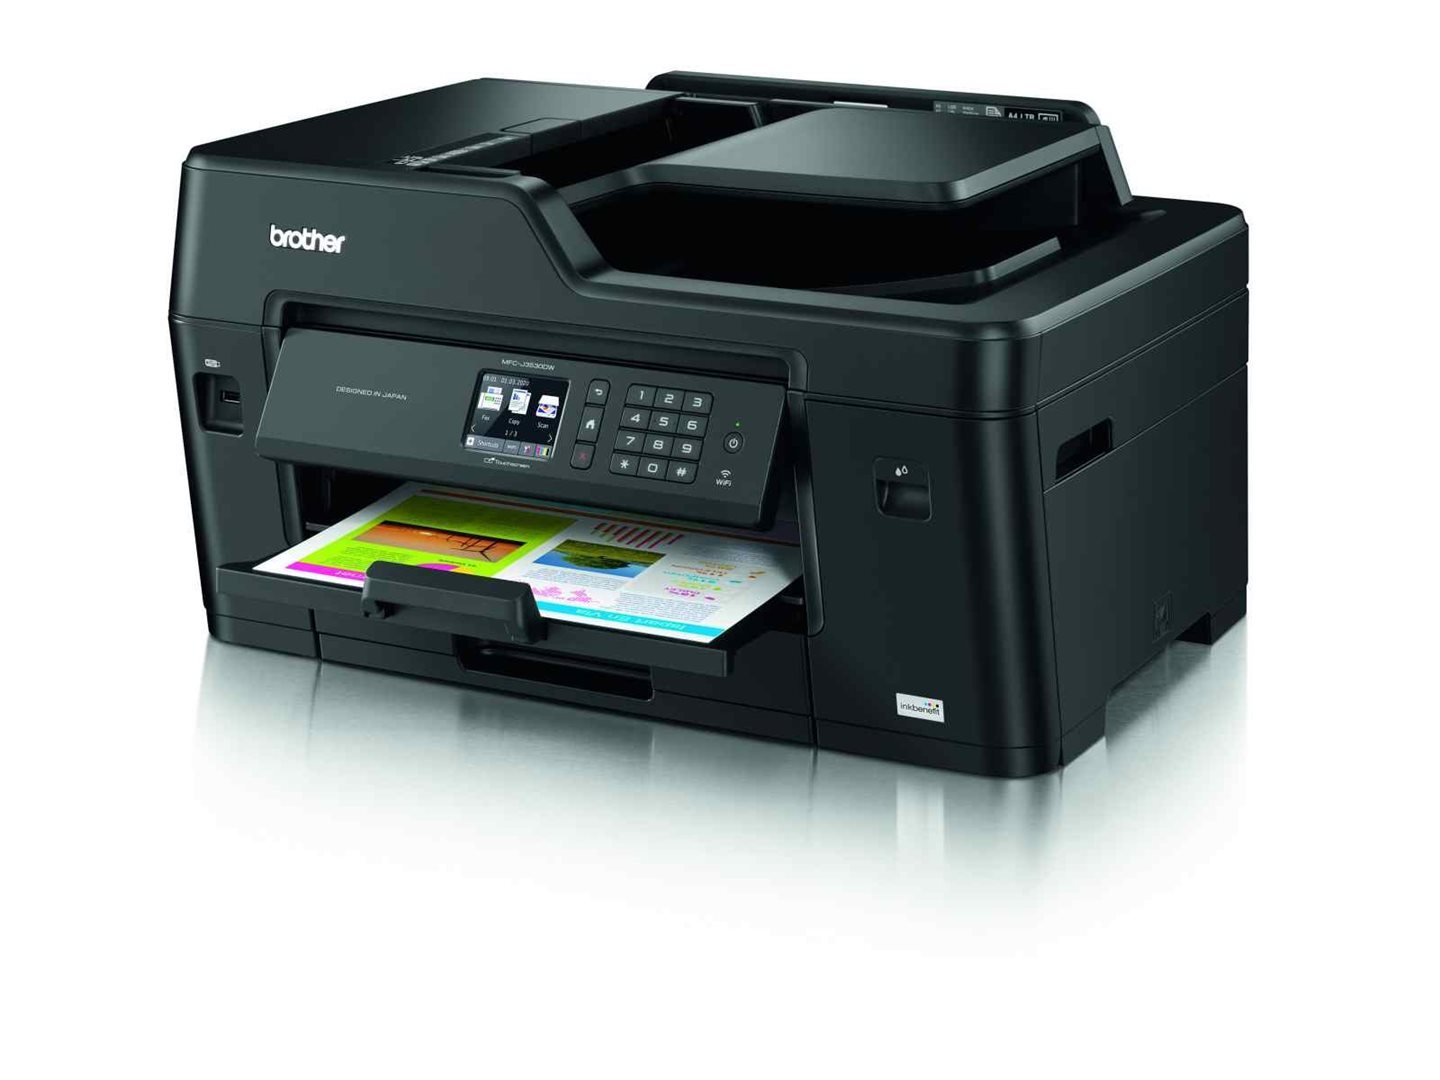 Brother MFC-J3530DW, A3 tiskárna/kopírka/skener/fax, tisk na šířku, duplexní tisk, síť, WiFi, dotykový LCD